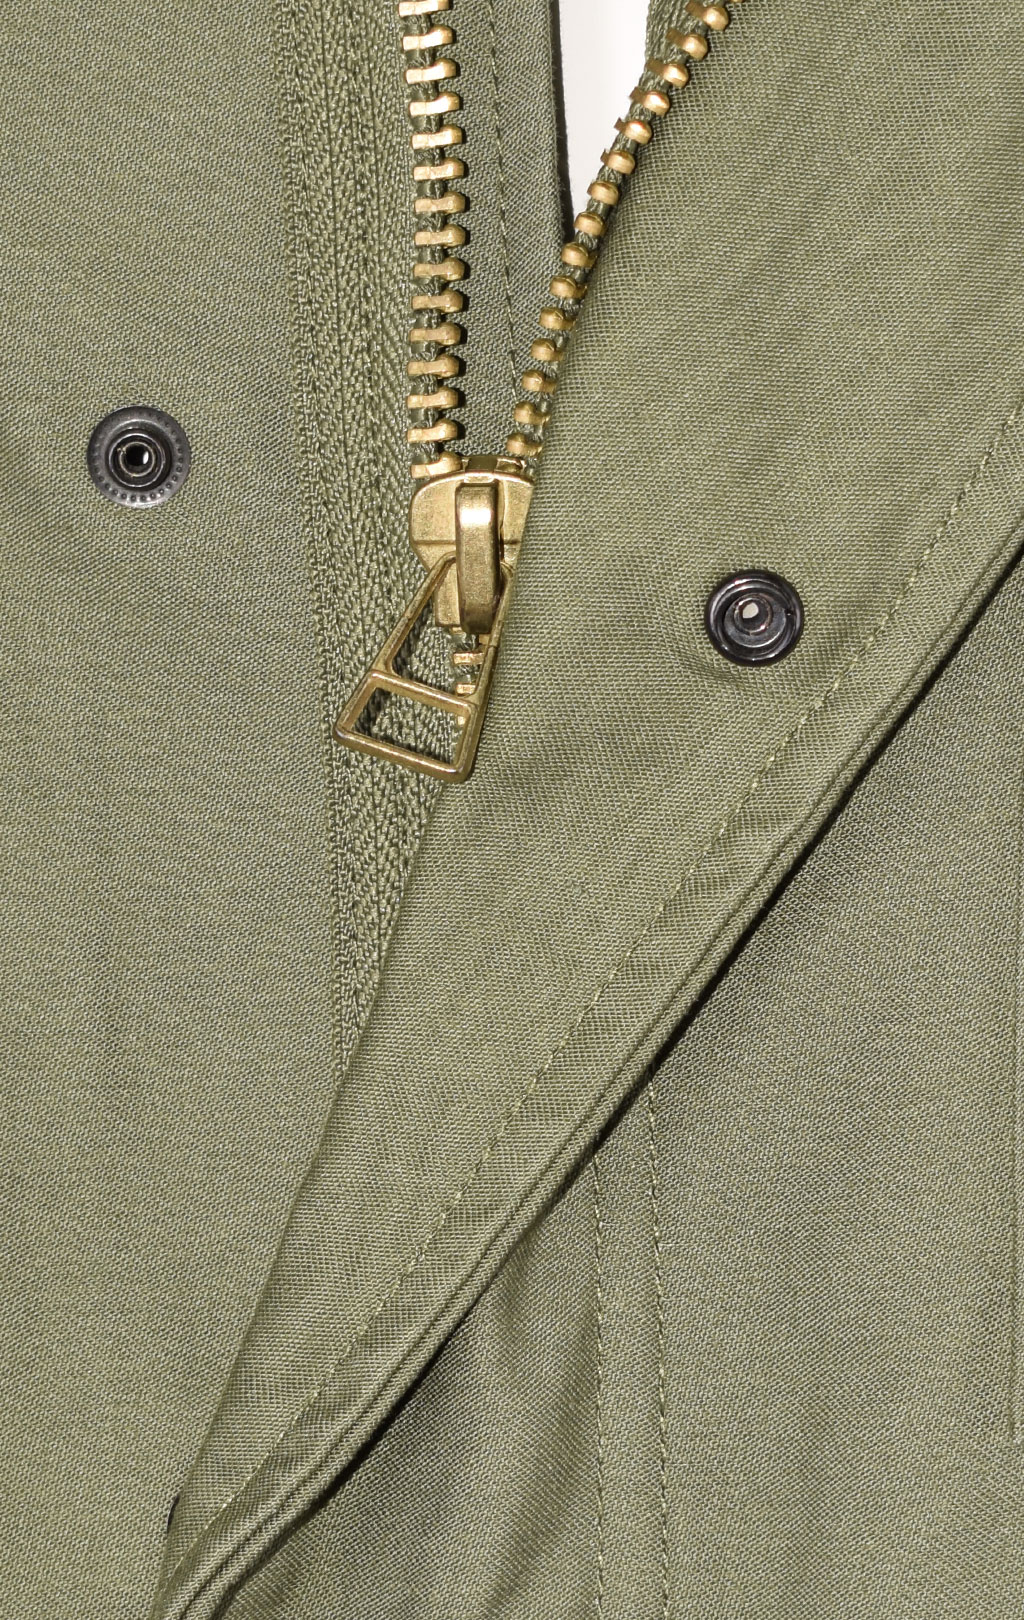 Куртка CLASSIC big size M-65 хлопок/нейлон olive 